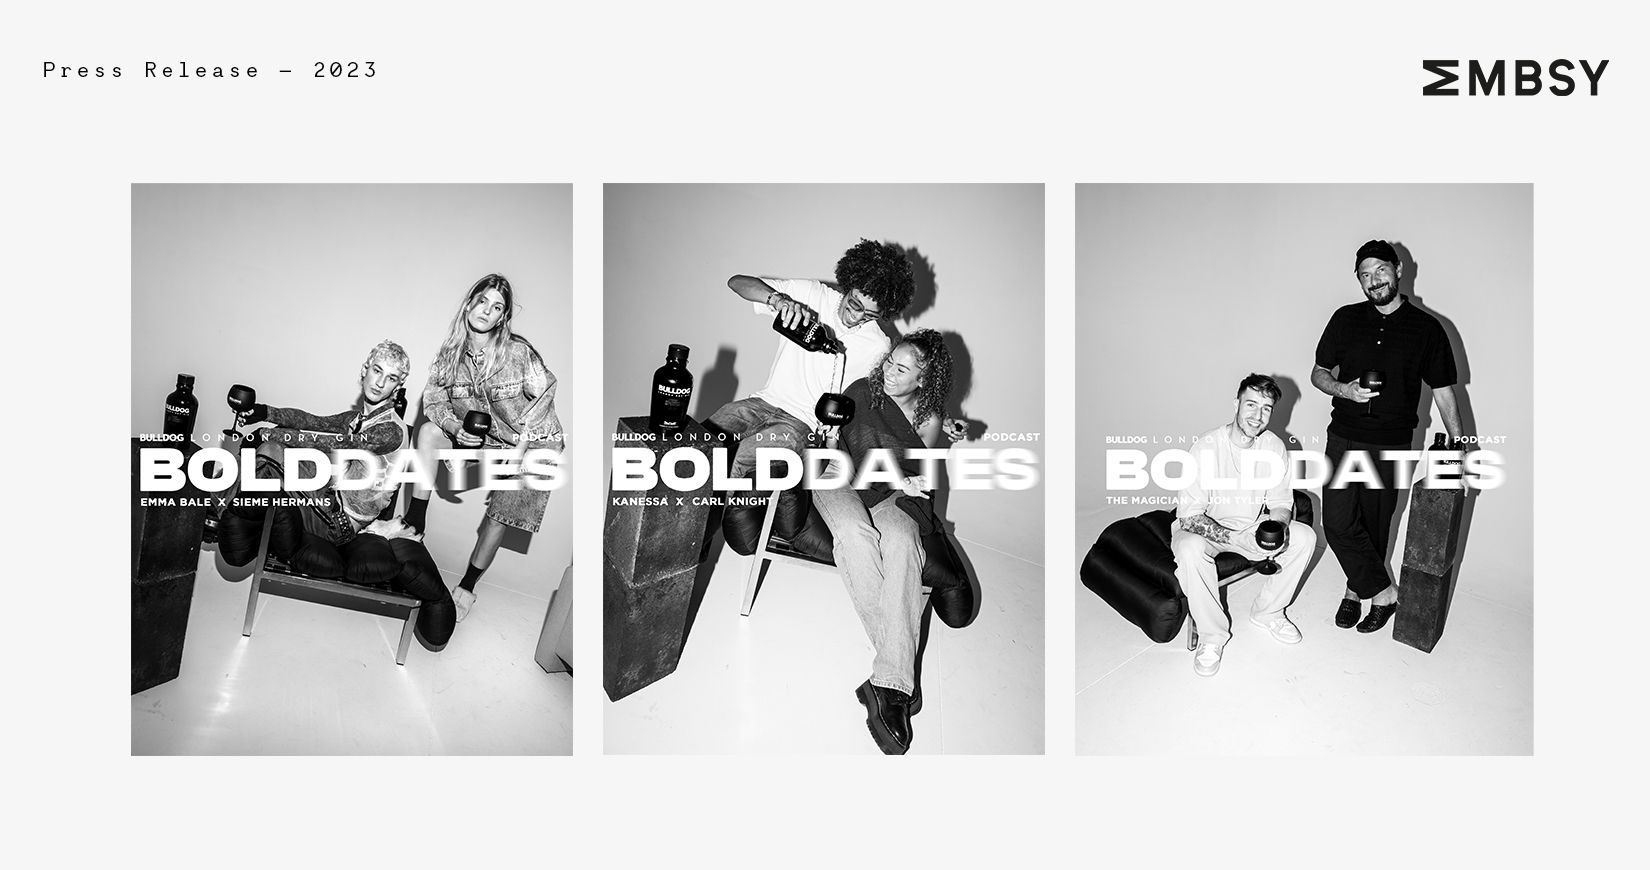 Bulldog Gin lance ‘Bold Dates’ : une série de podcasts réunissant des artistes belges, amenés à partager leur parcours inspirants et audacieux